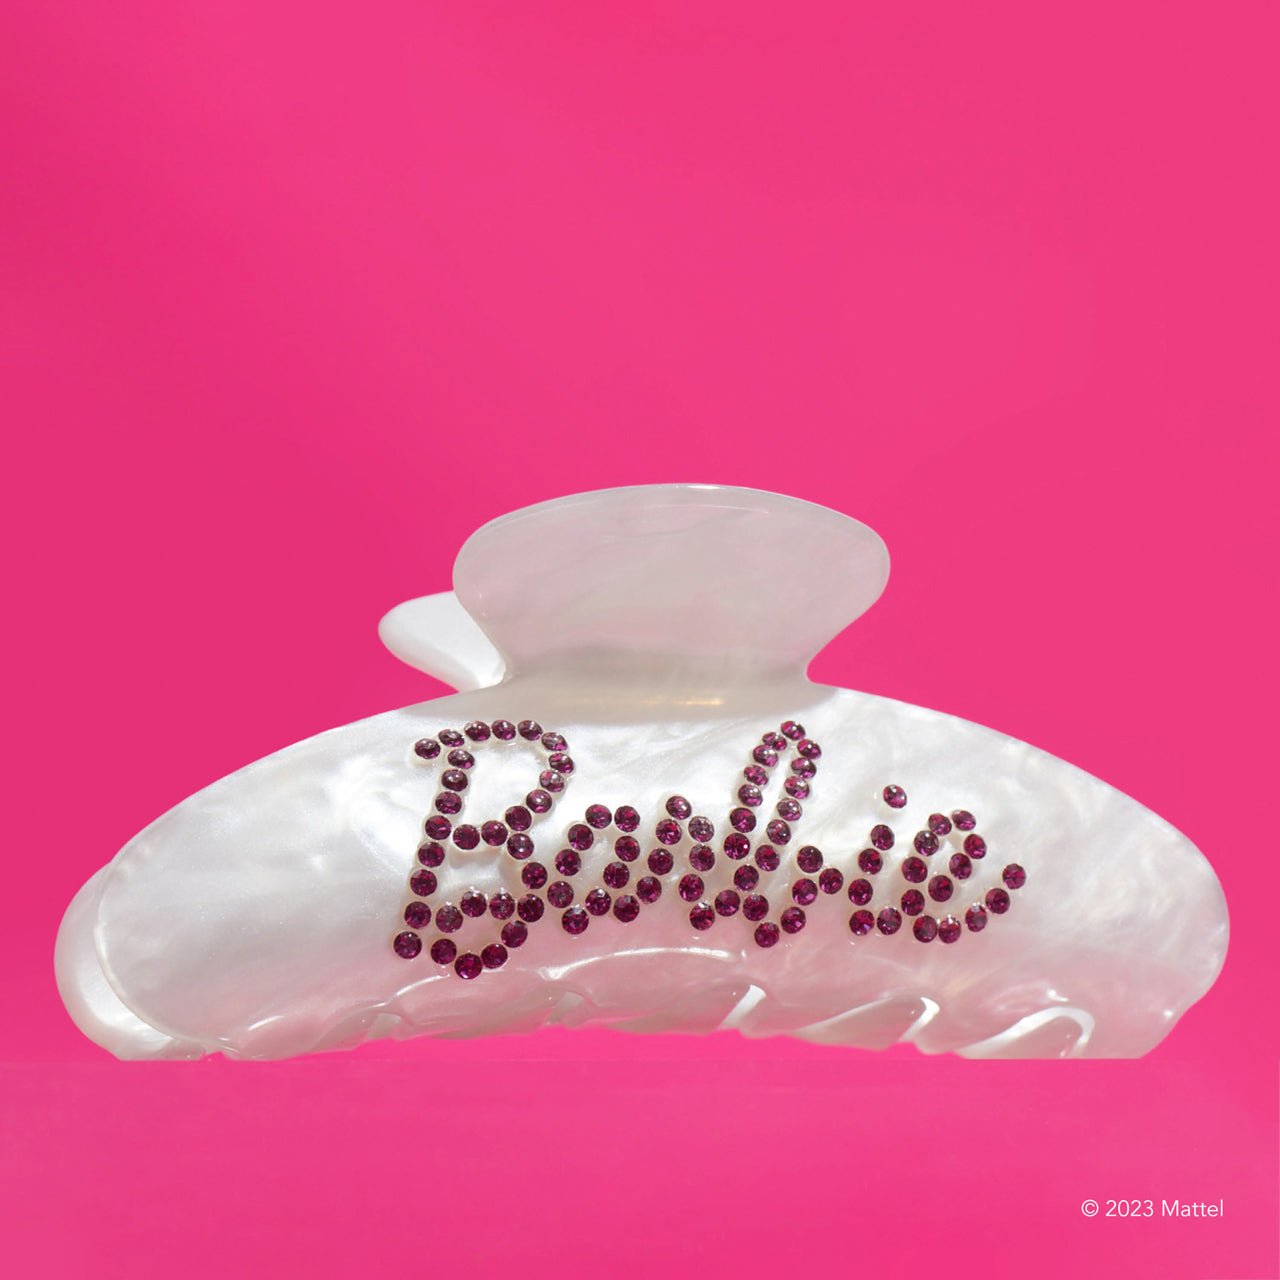 Barbie™ x Kitsch King keräilypaketti